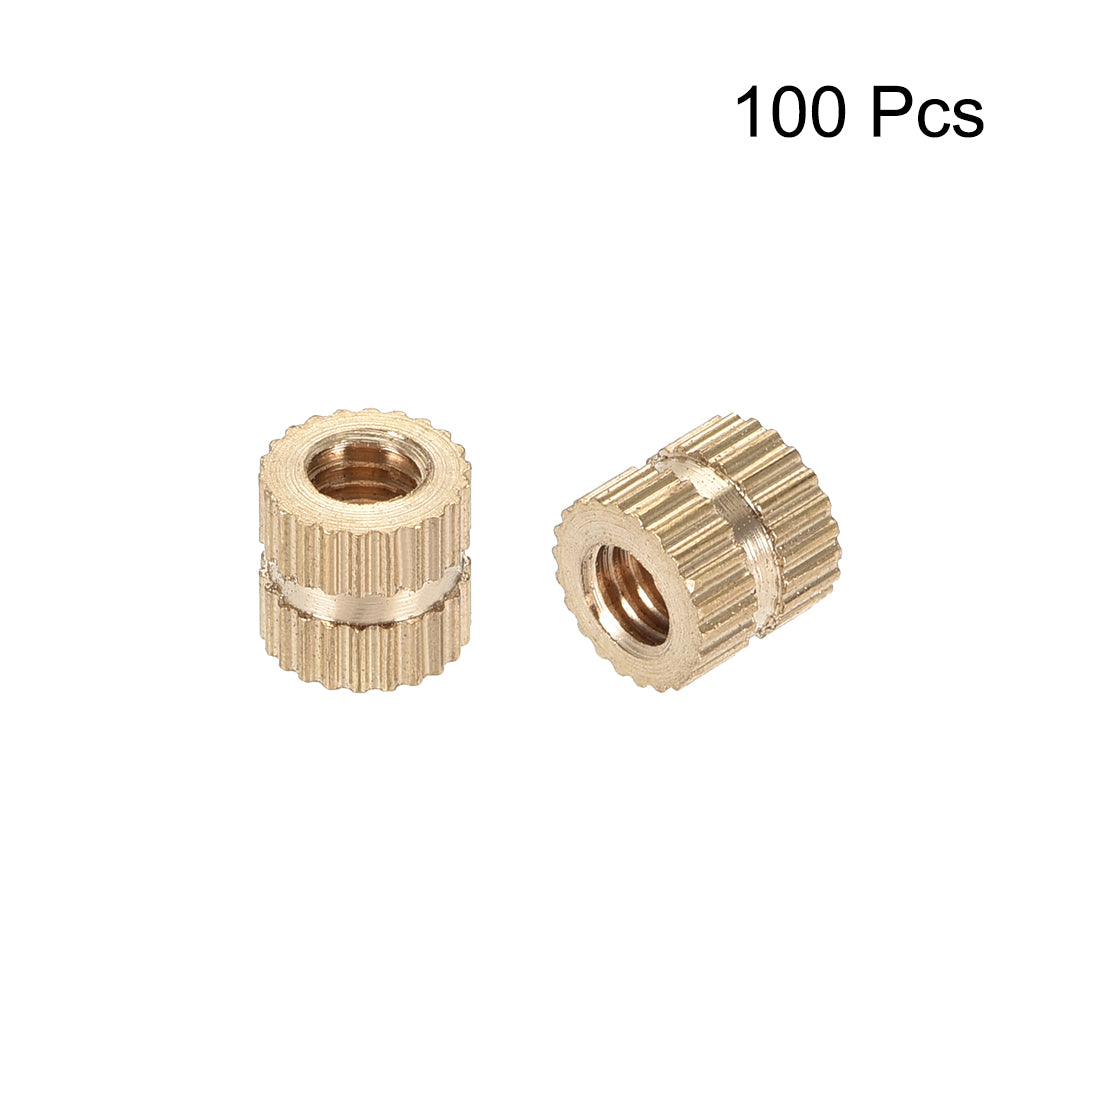 uxcell Uxcell Knurled Insert Nuts, M4 x 6mm(L) x 6mm(OD) Female Thread Brass Embedment Assortment Kit, 100 Pcs